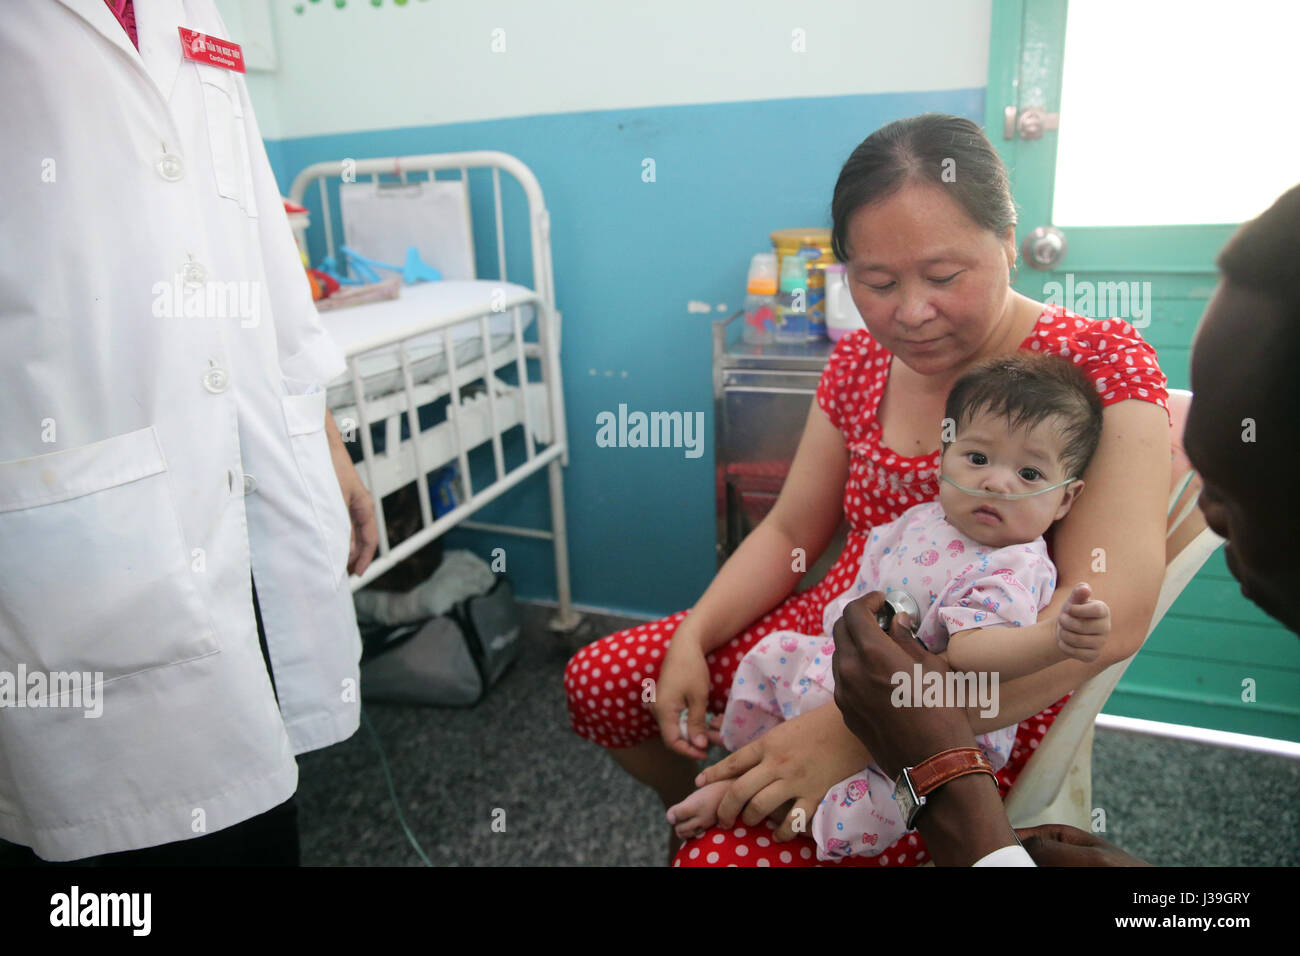 El Instituto del Corazón ofrecen cuidado de alta calidad a los vietnamitas a pacientes que sufren de enfermedades del corazón. Equipo médico senegalés entrenados para practicar la cirugía cardiaca. Foto de stock